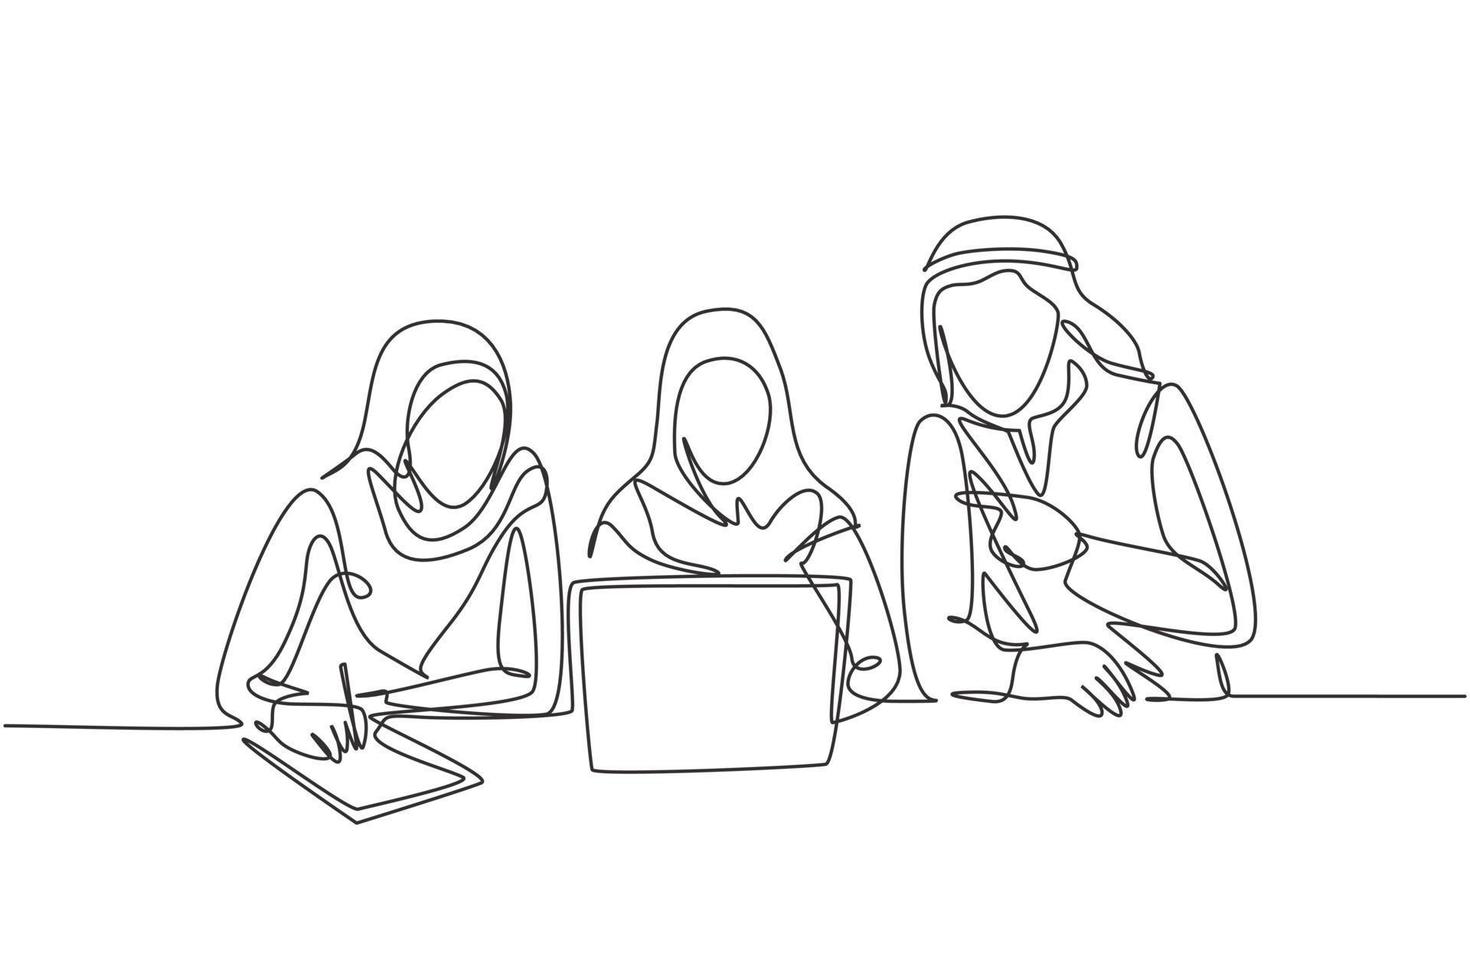 un dibujo de una sola línea de jóvenes empleados musulmanes, hombres y mujeres, que toman horas extras para terminar los trabajos. hijab de tela de arabia saudita, kandora, pañuelo en la cabeza, ghutra. Ilustración de vector de diseño de dibujo de línea continua